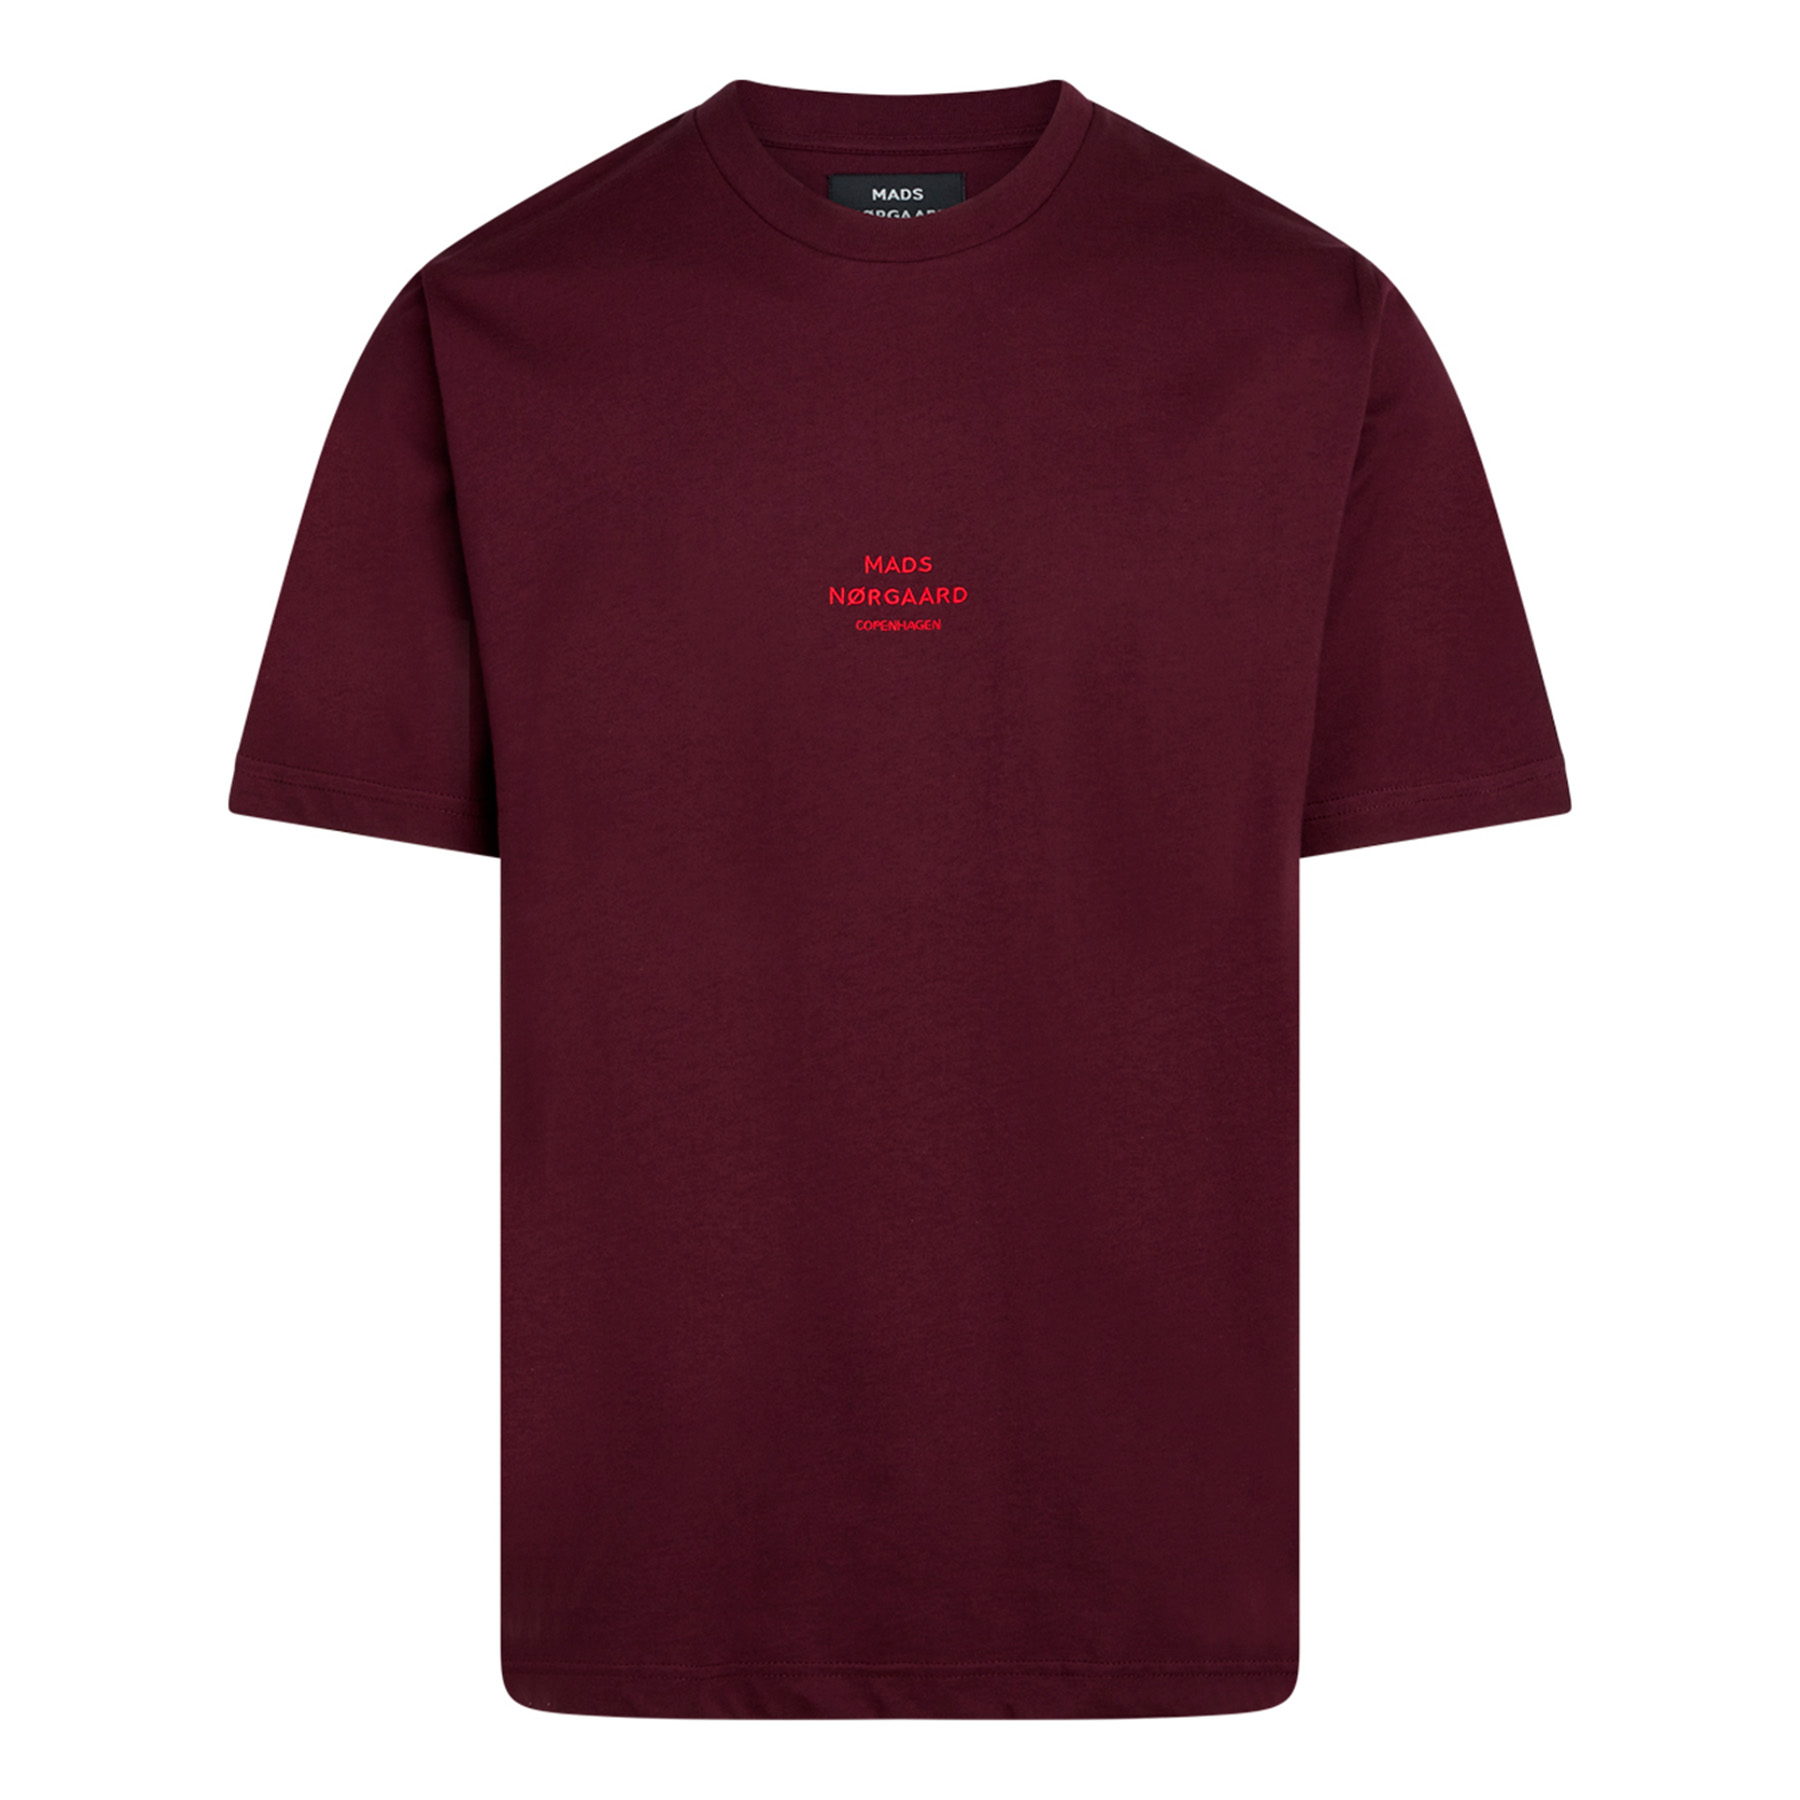 Nørgaard - Organic twin emb tee - T-shirts til mænd - Rød - XL